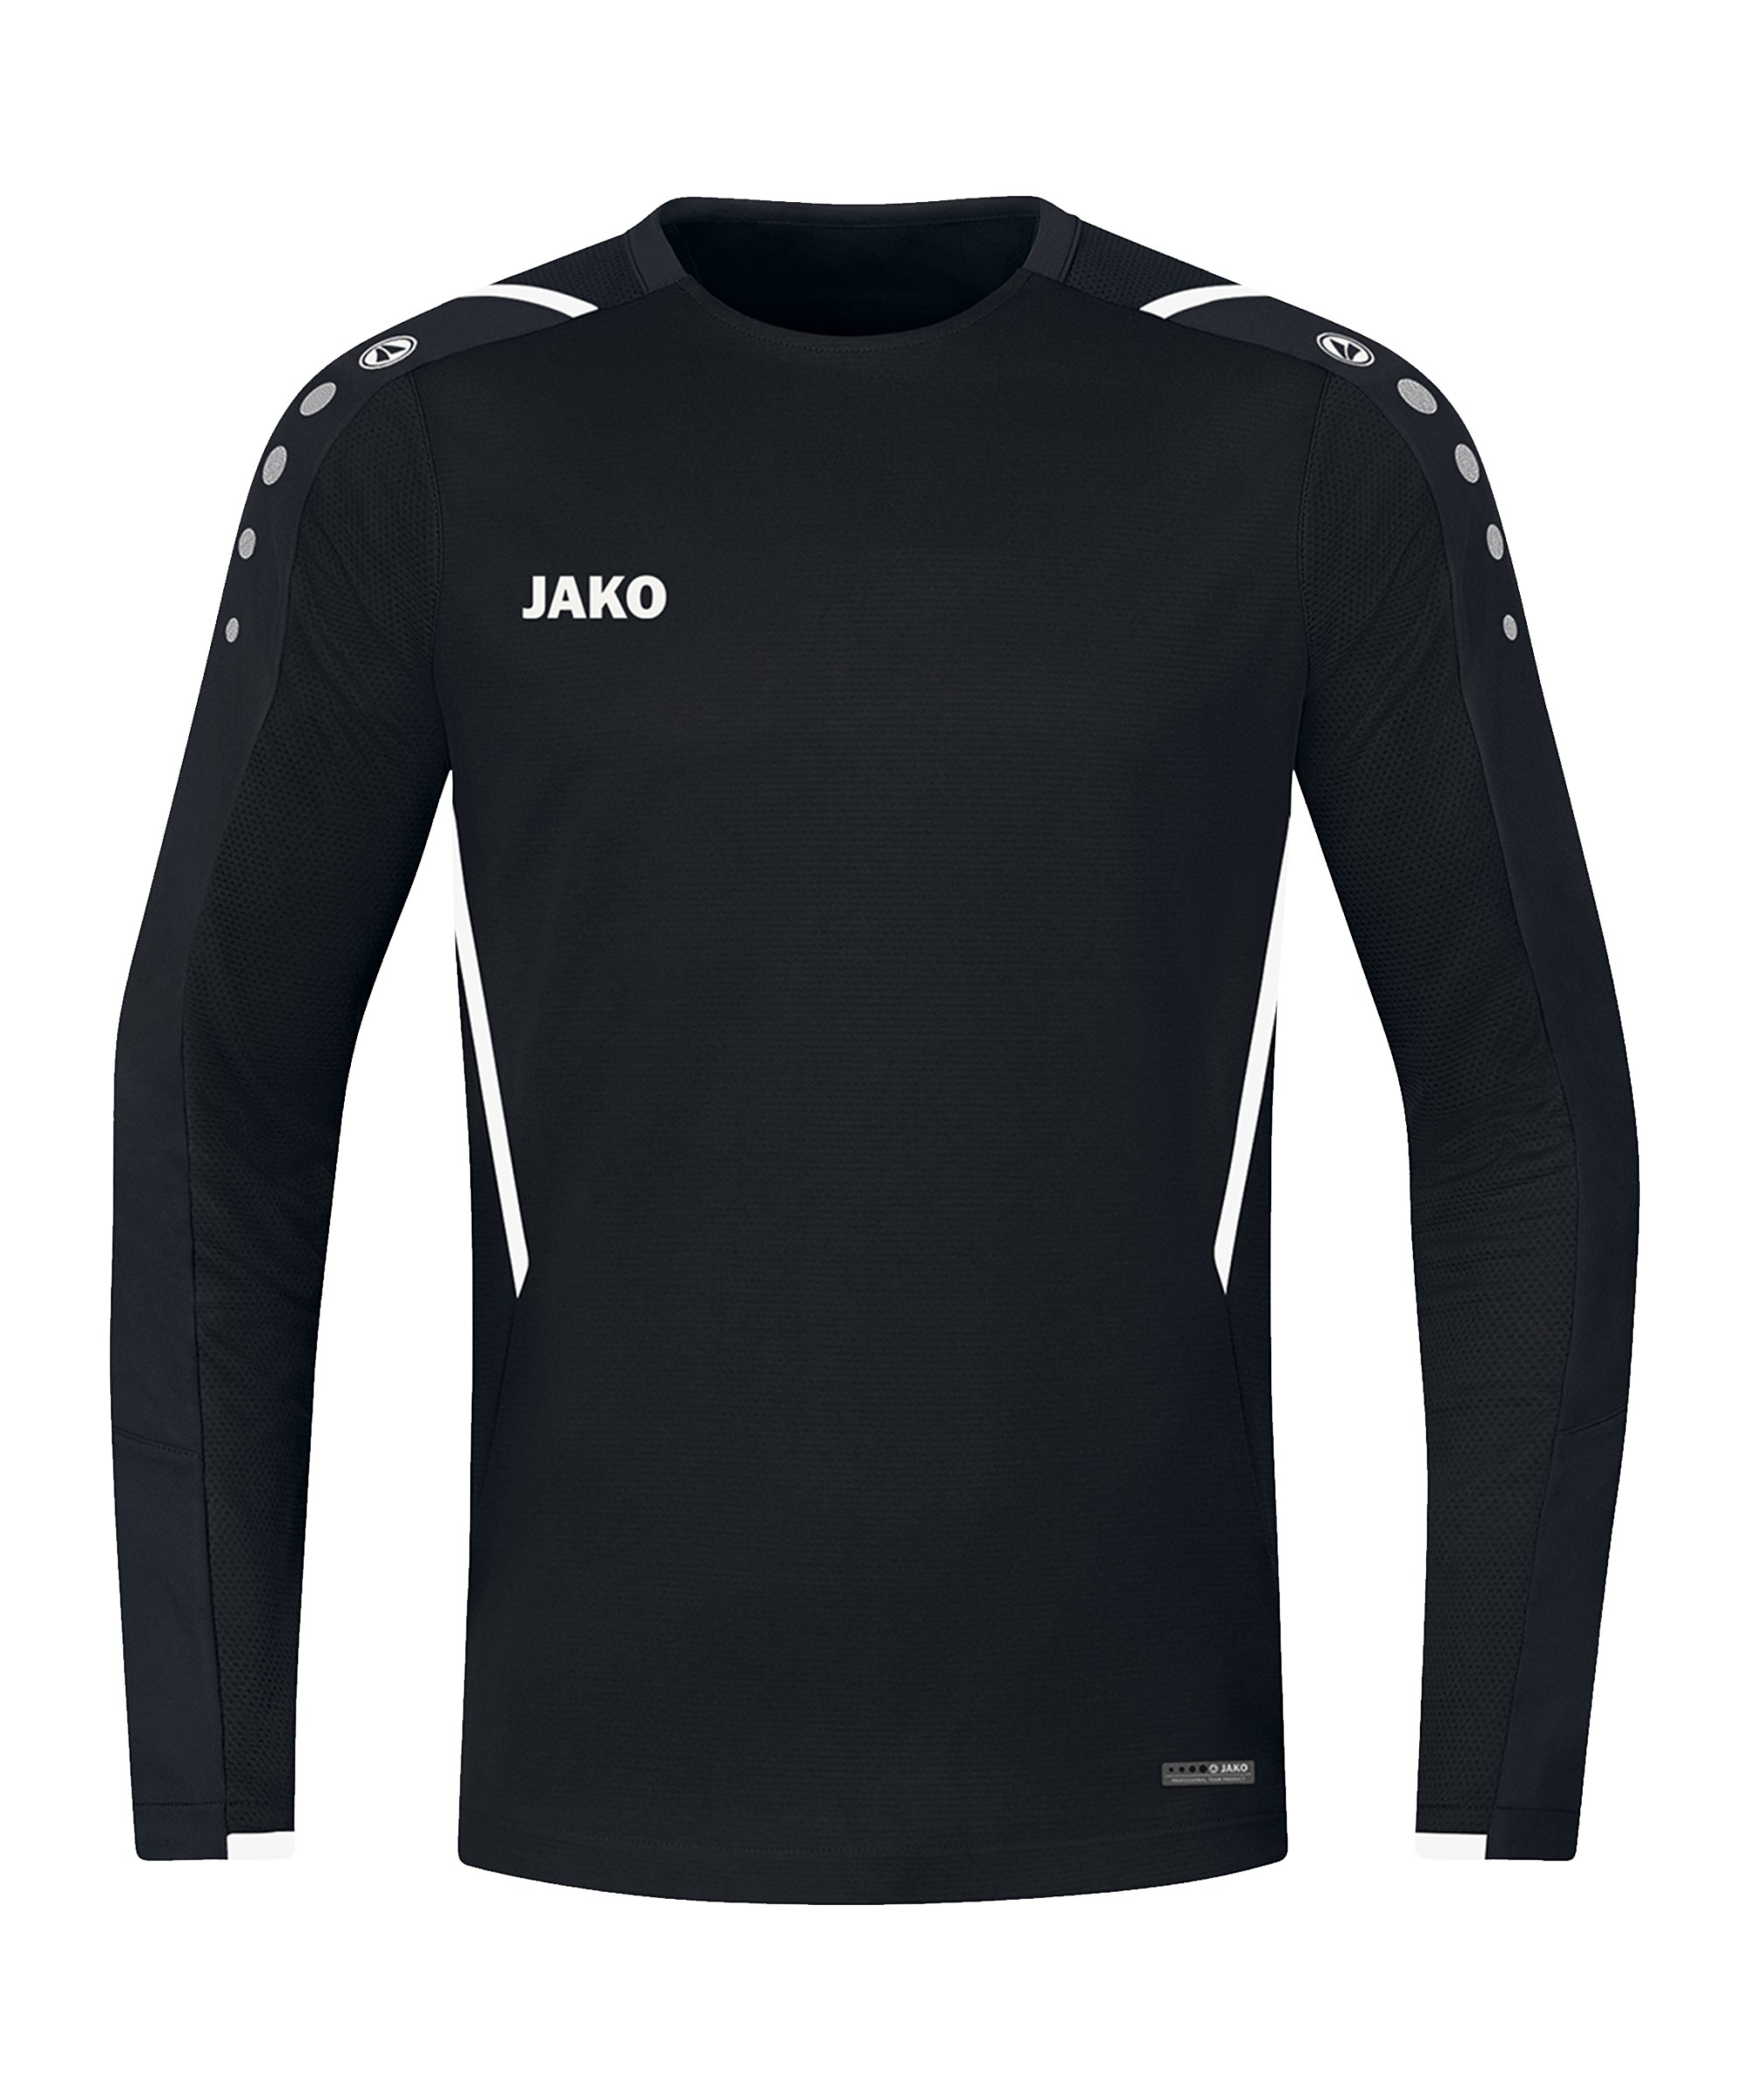 JAKO Challenge Sweatshirt Schwarz Weiss F802 - schwarz